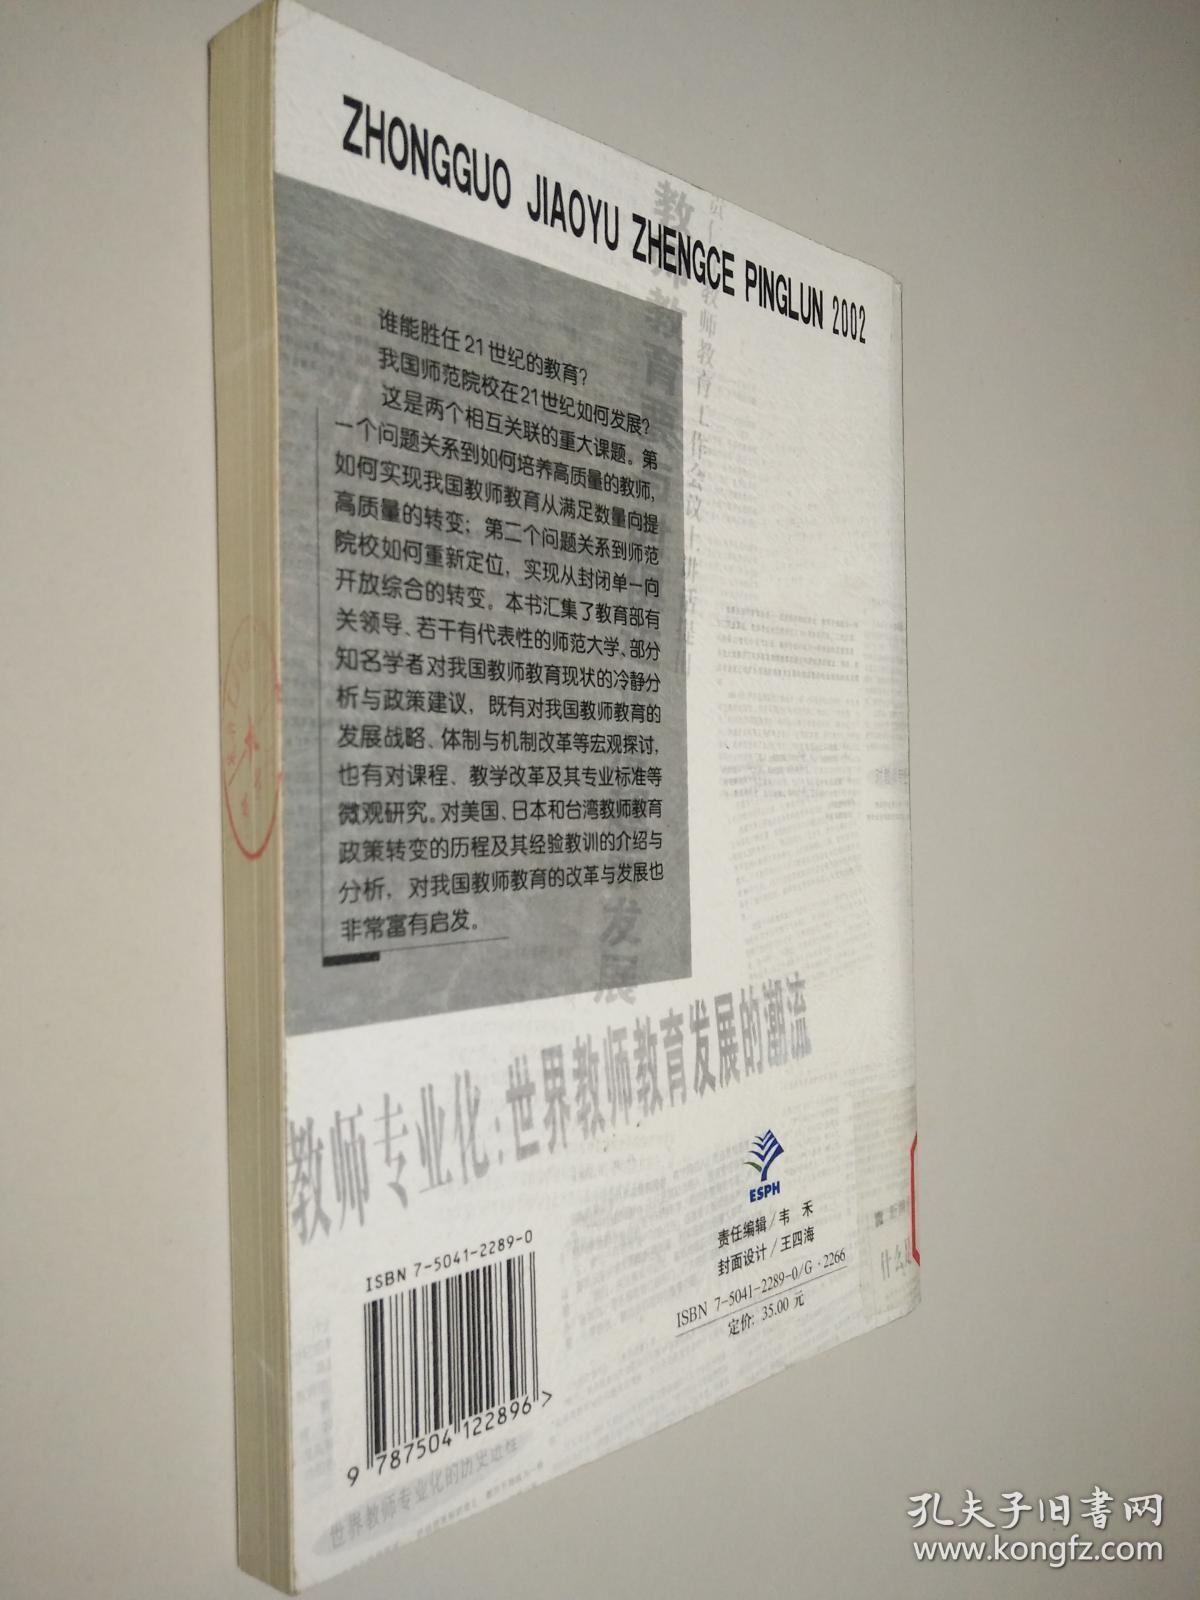 中国教育政策评论.2002